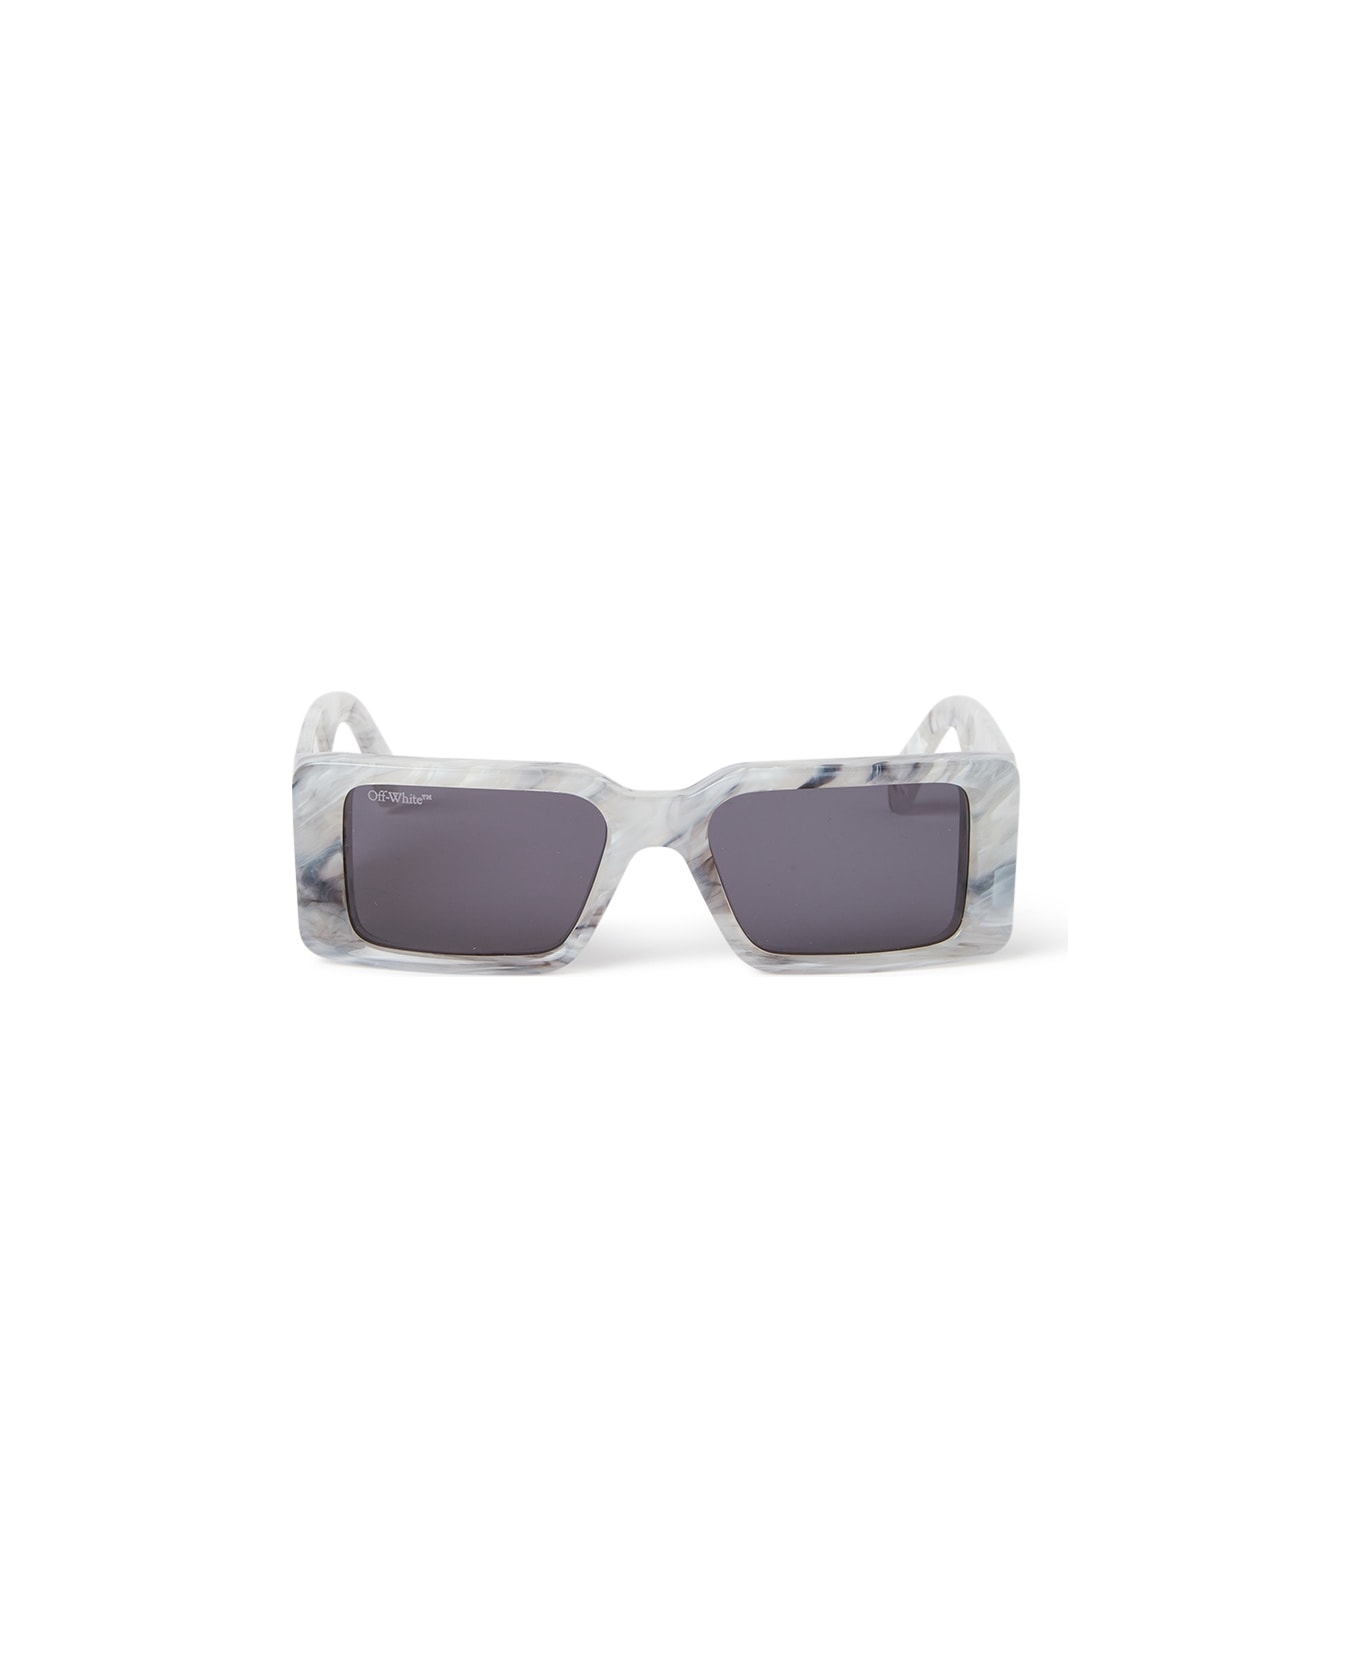 Off-White OERI097 MILANO Sunglasses - Marble